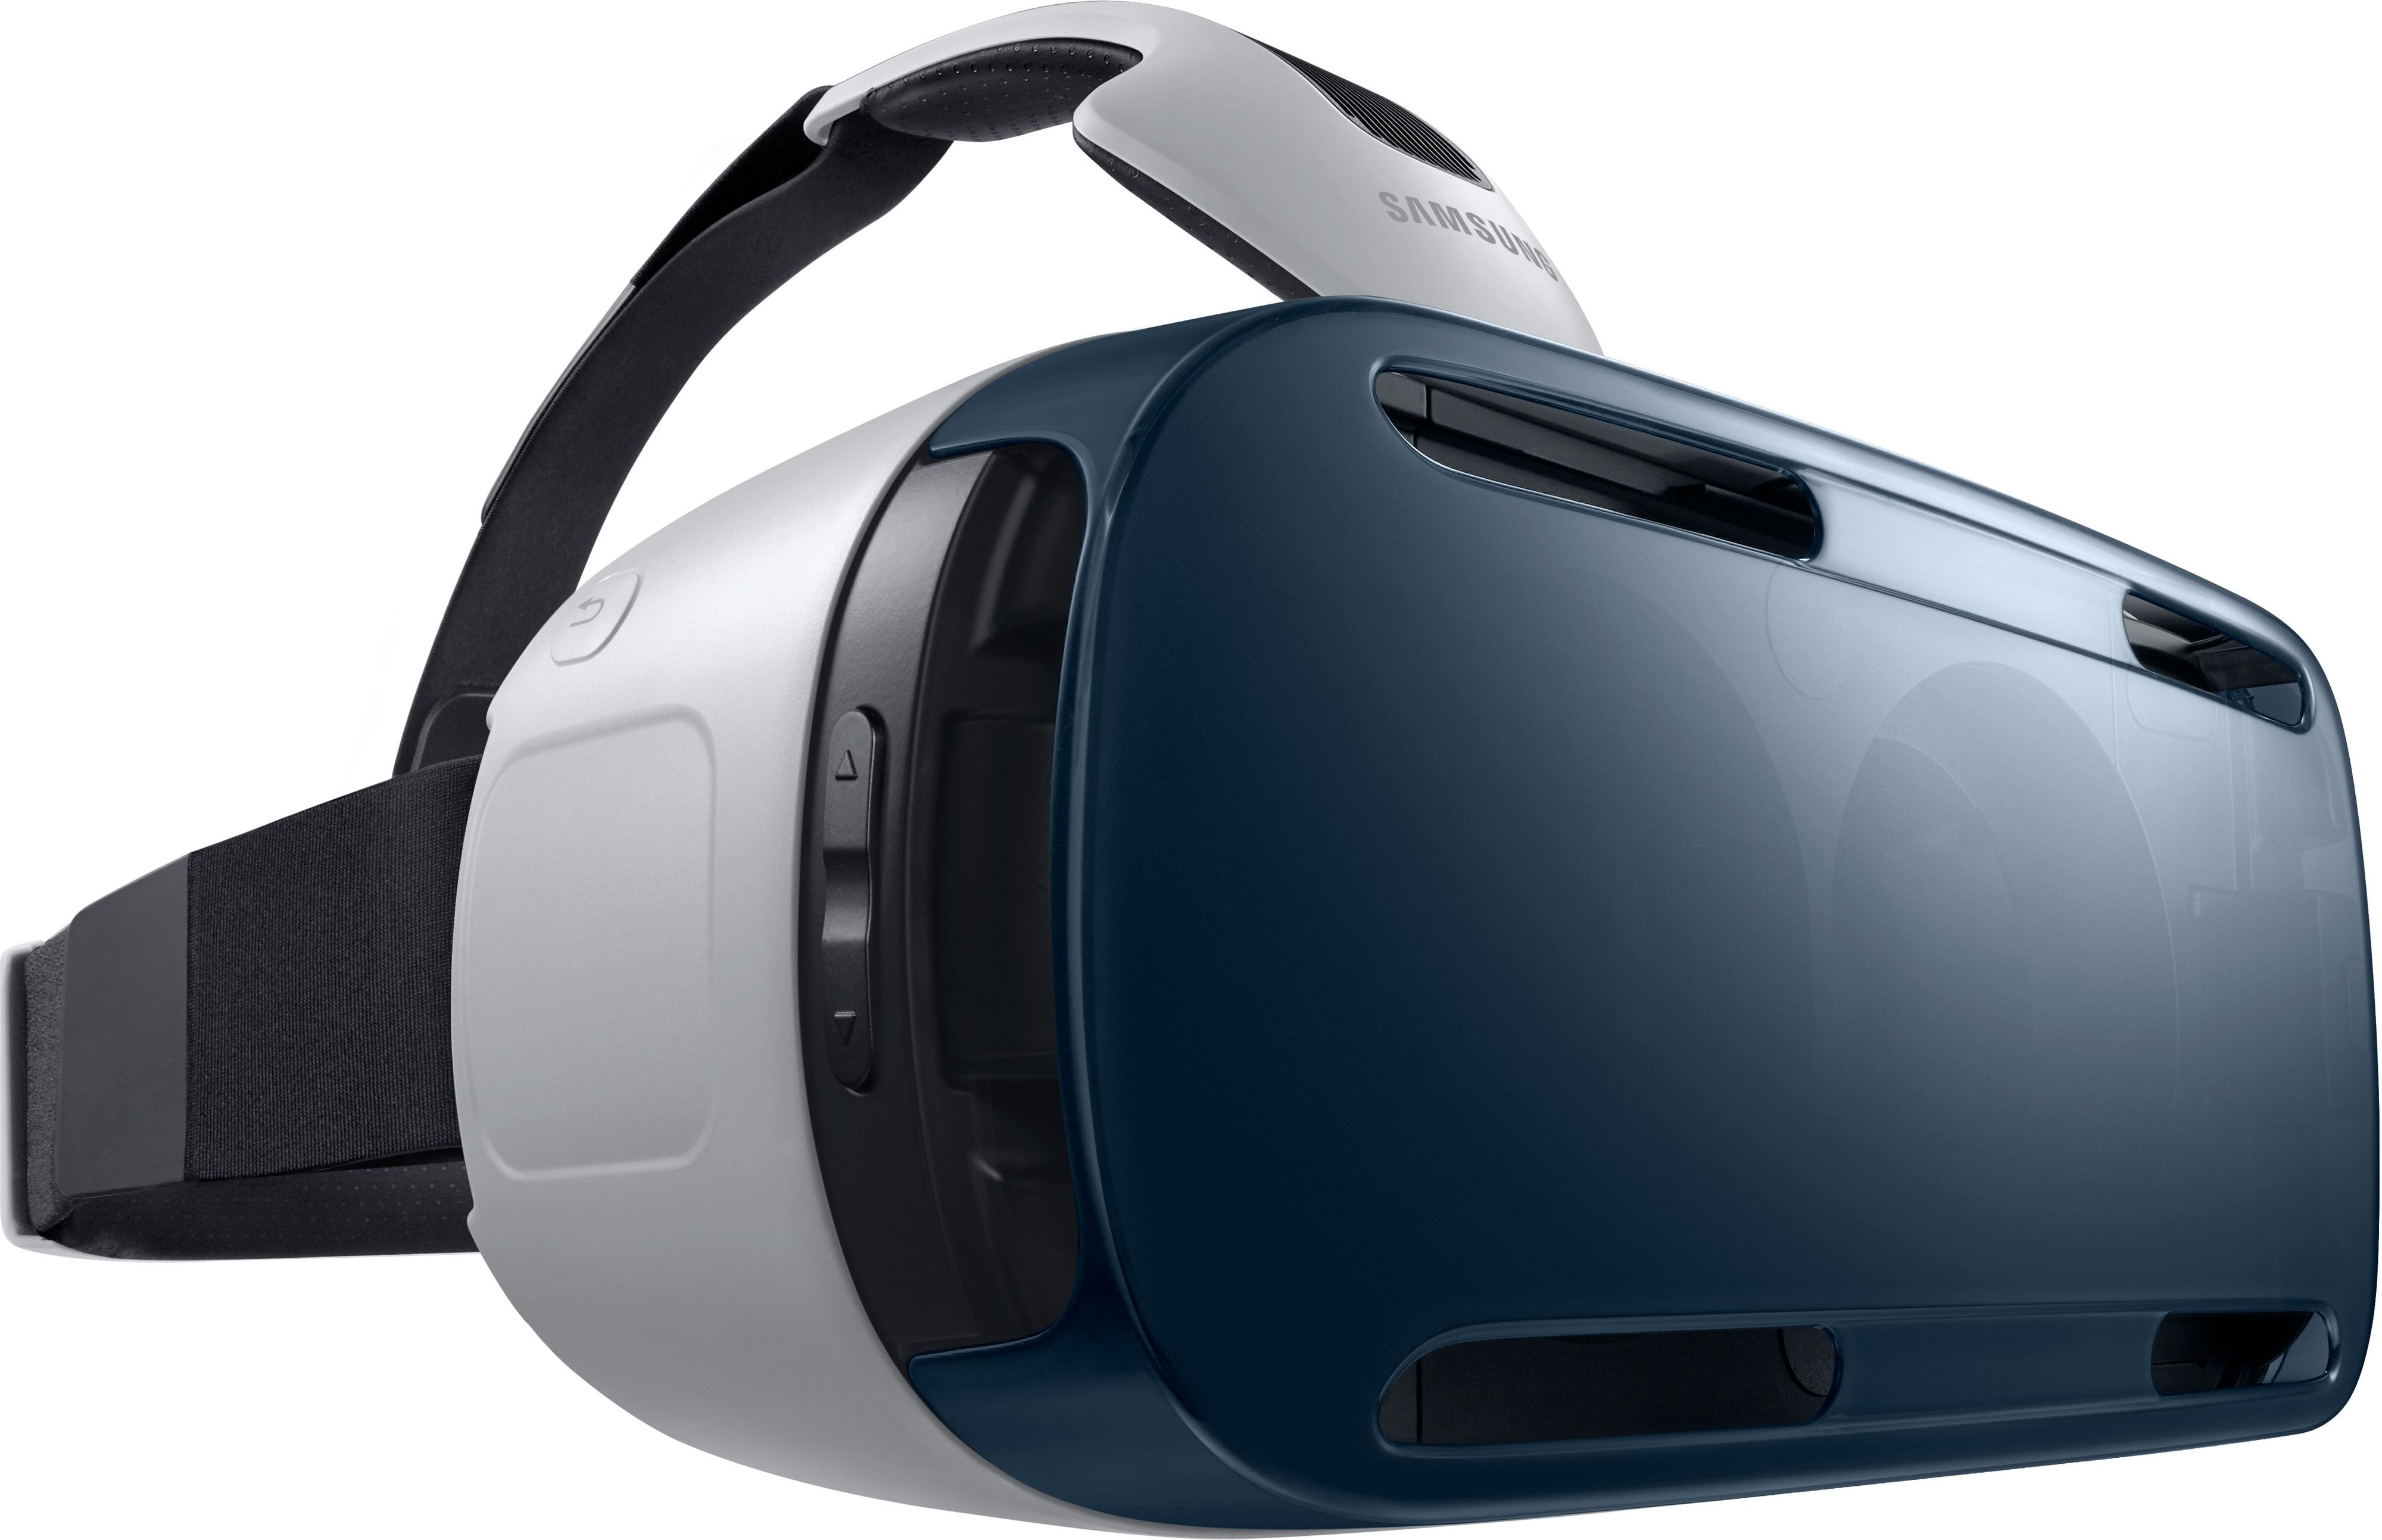 Det er ennå uvisst hvordan Microsofts VR-produkt vil skille seg fra konkurrentene. Dette er Samsungs Gear VR-briller.Foto: Samsung